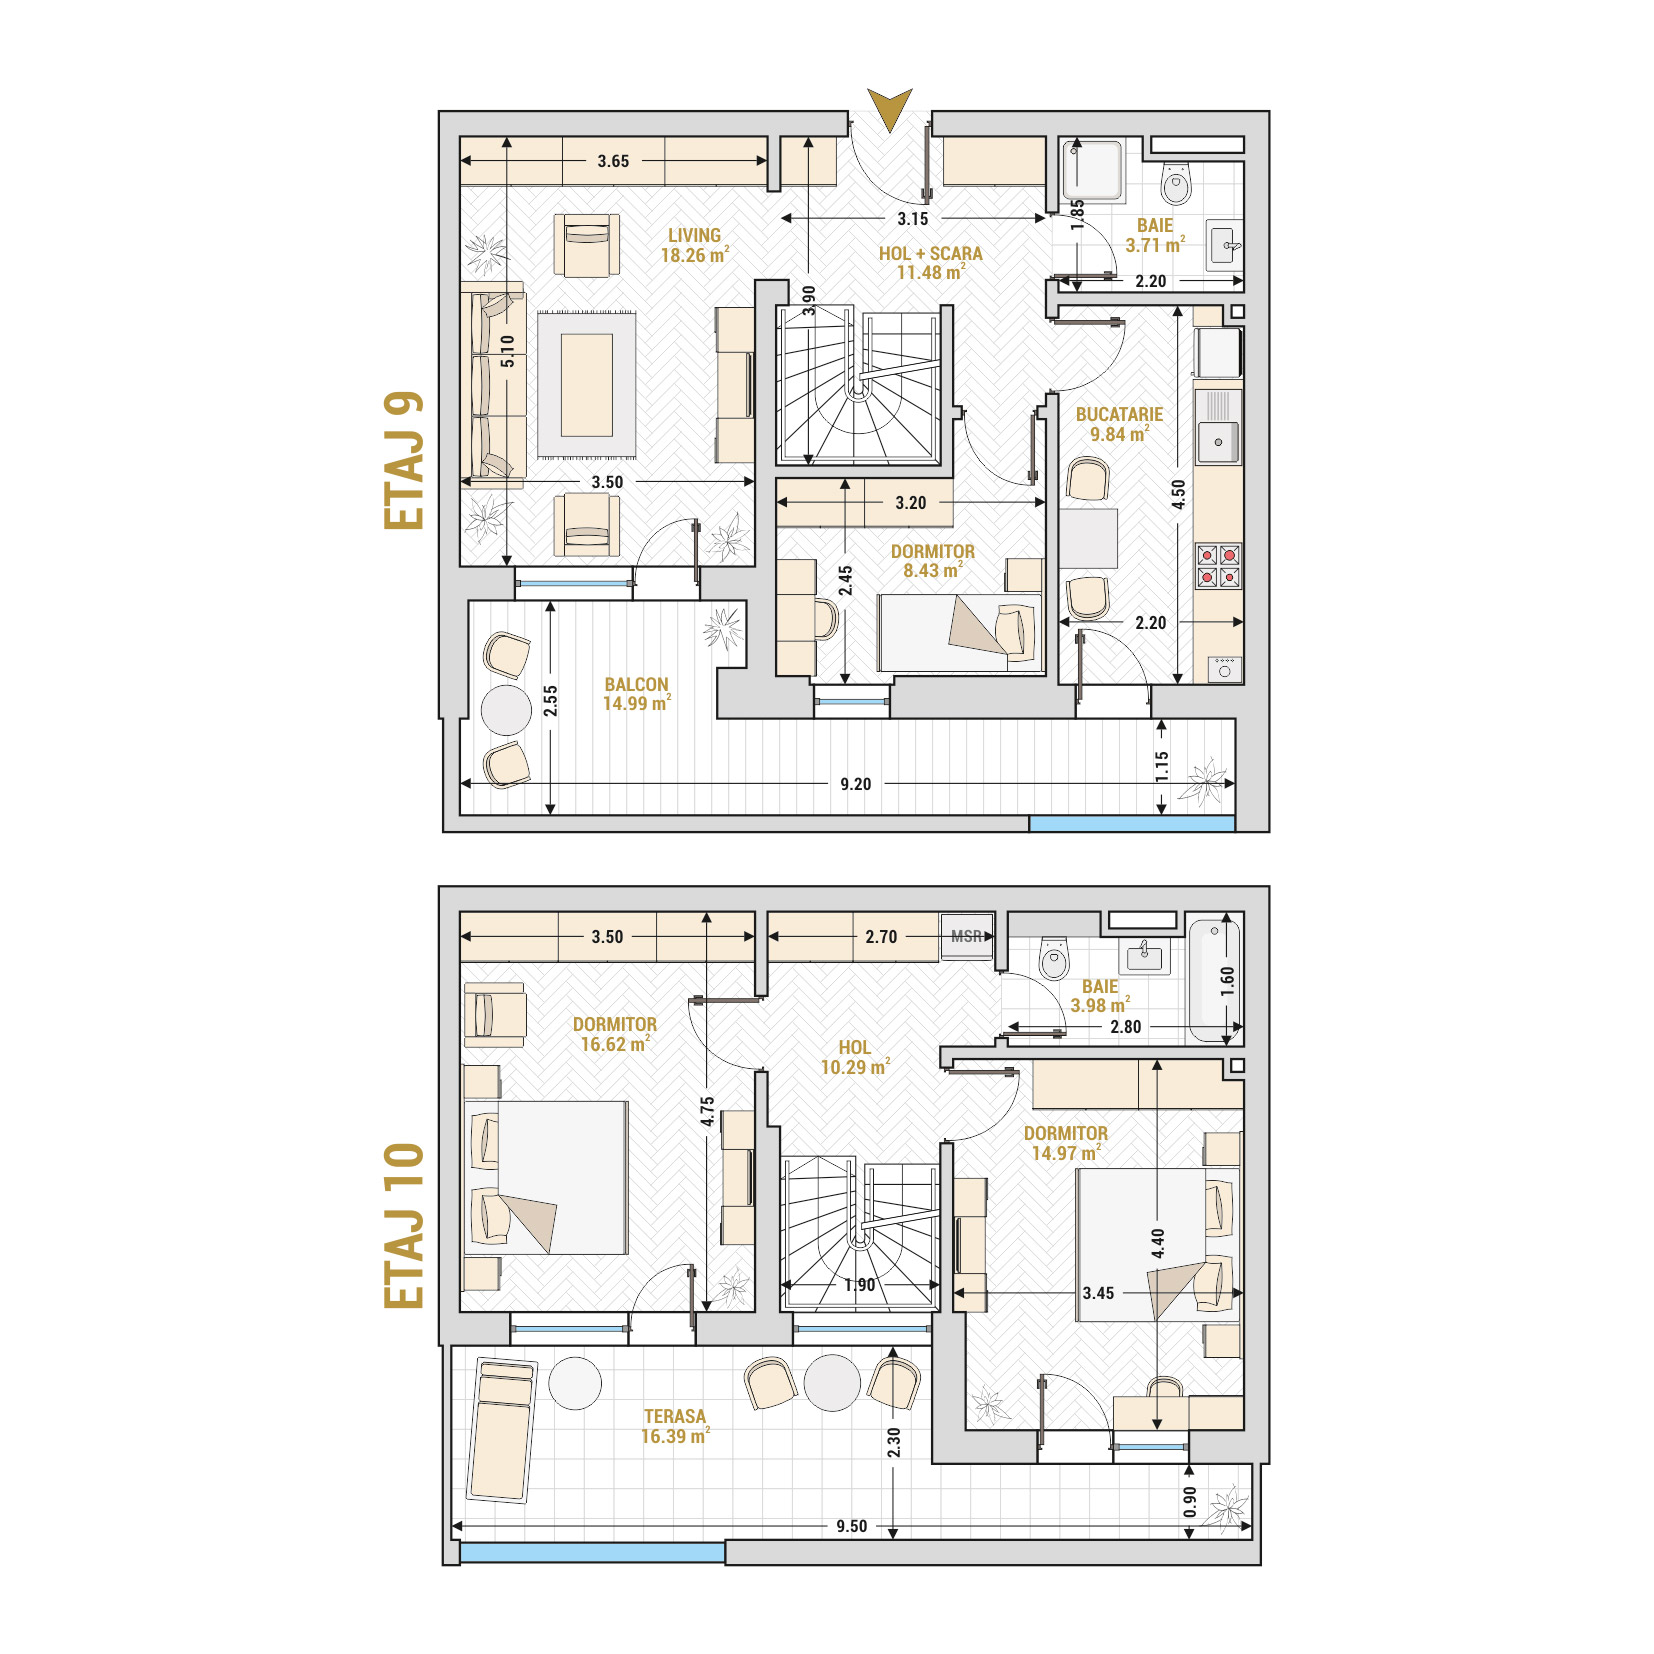 Penthouse 4 Camere Tip 3 Corp 2 - Drumul Taberei Residence - Apartamente de vanzare Bucuresti - Suprafata utila totala - 128.96 mp